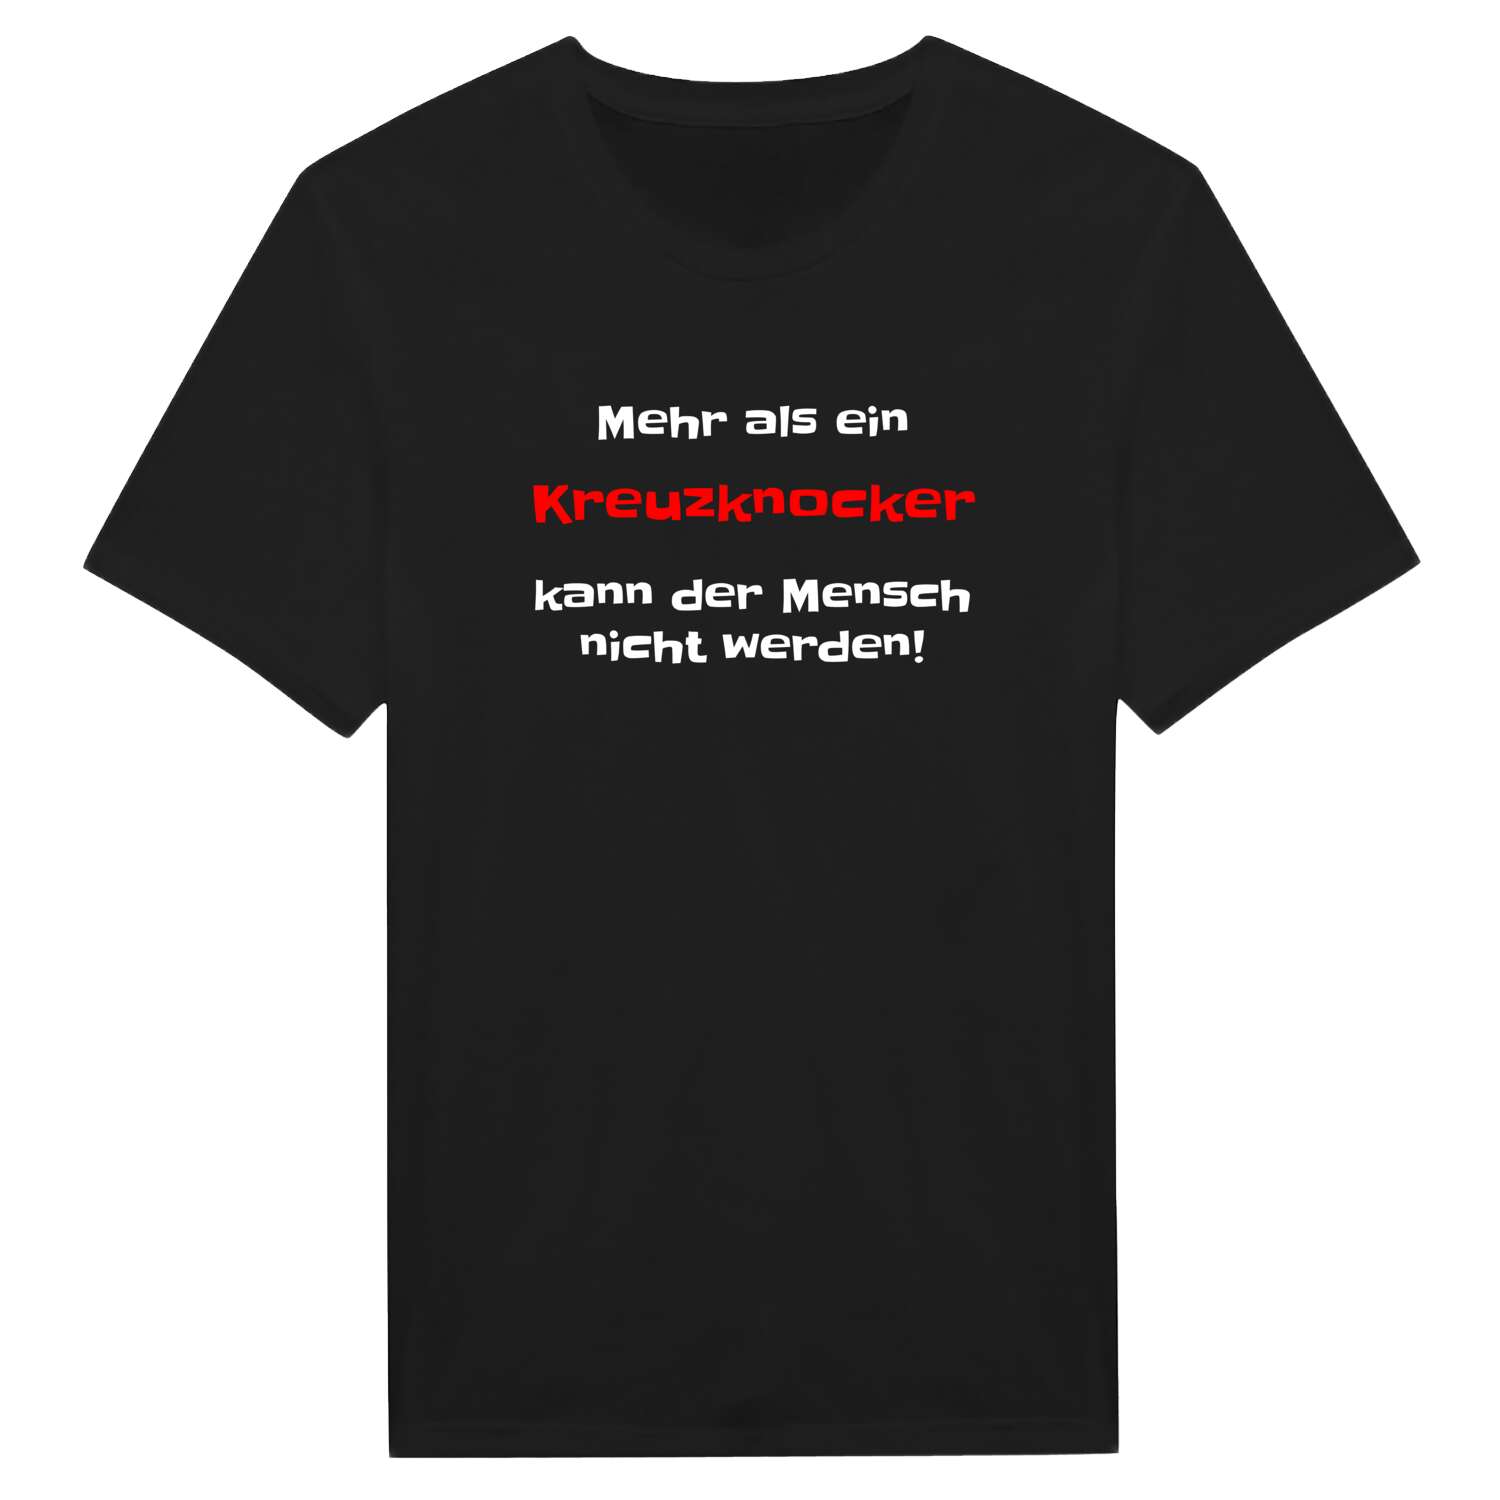 Kreuzknock T-Shirt »Mehr als ein«